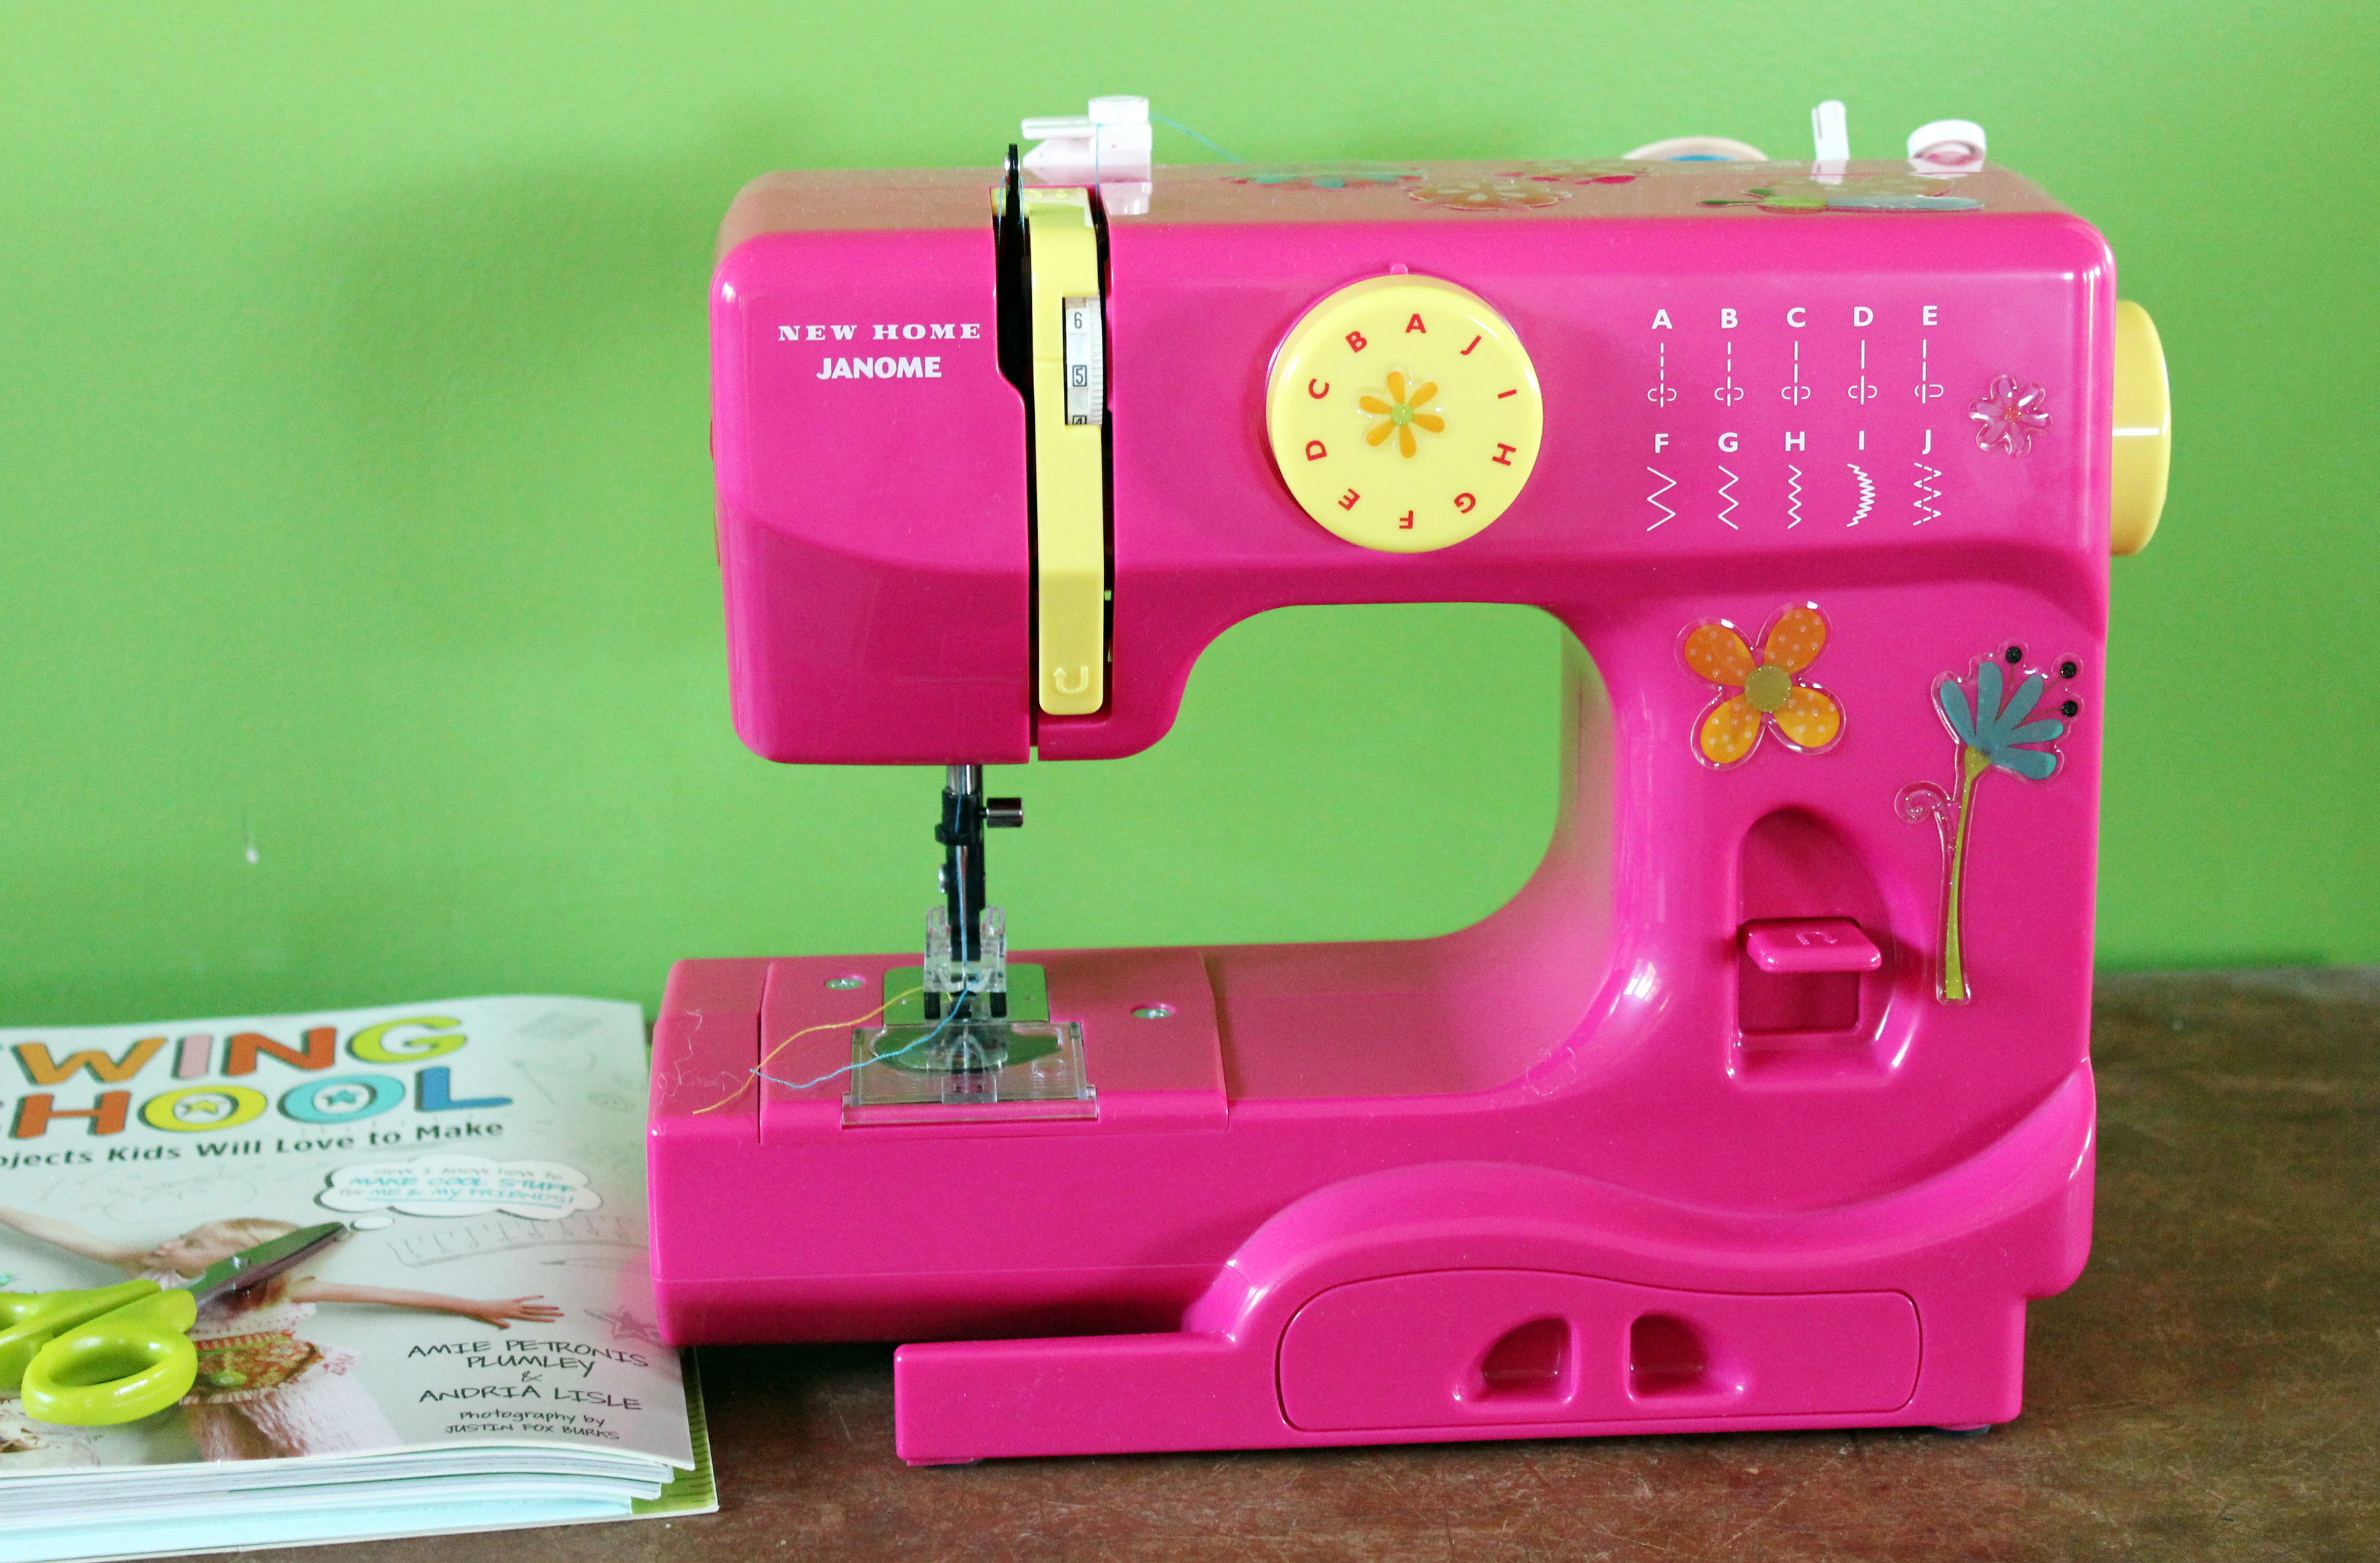 Купить домашнюю швейную машинку недорого. Детская швейная машинка Janome. Детская швейная машинка Sewing Machine. Швейная машинка FHSM 315. Швейная машинка FHSM 305.